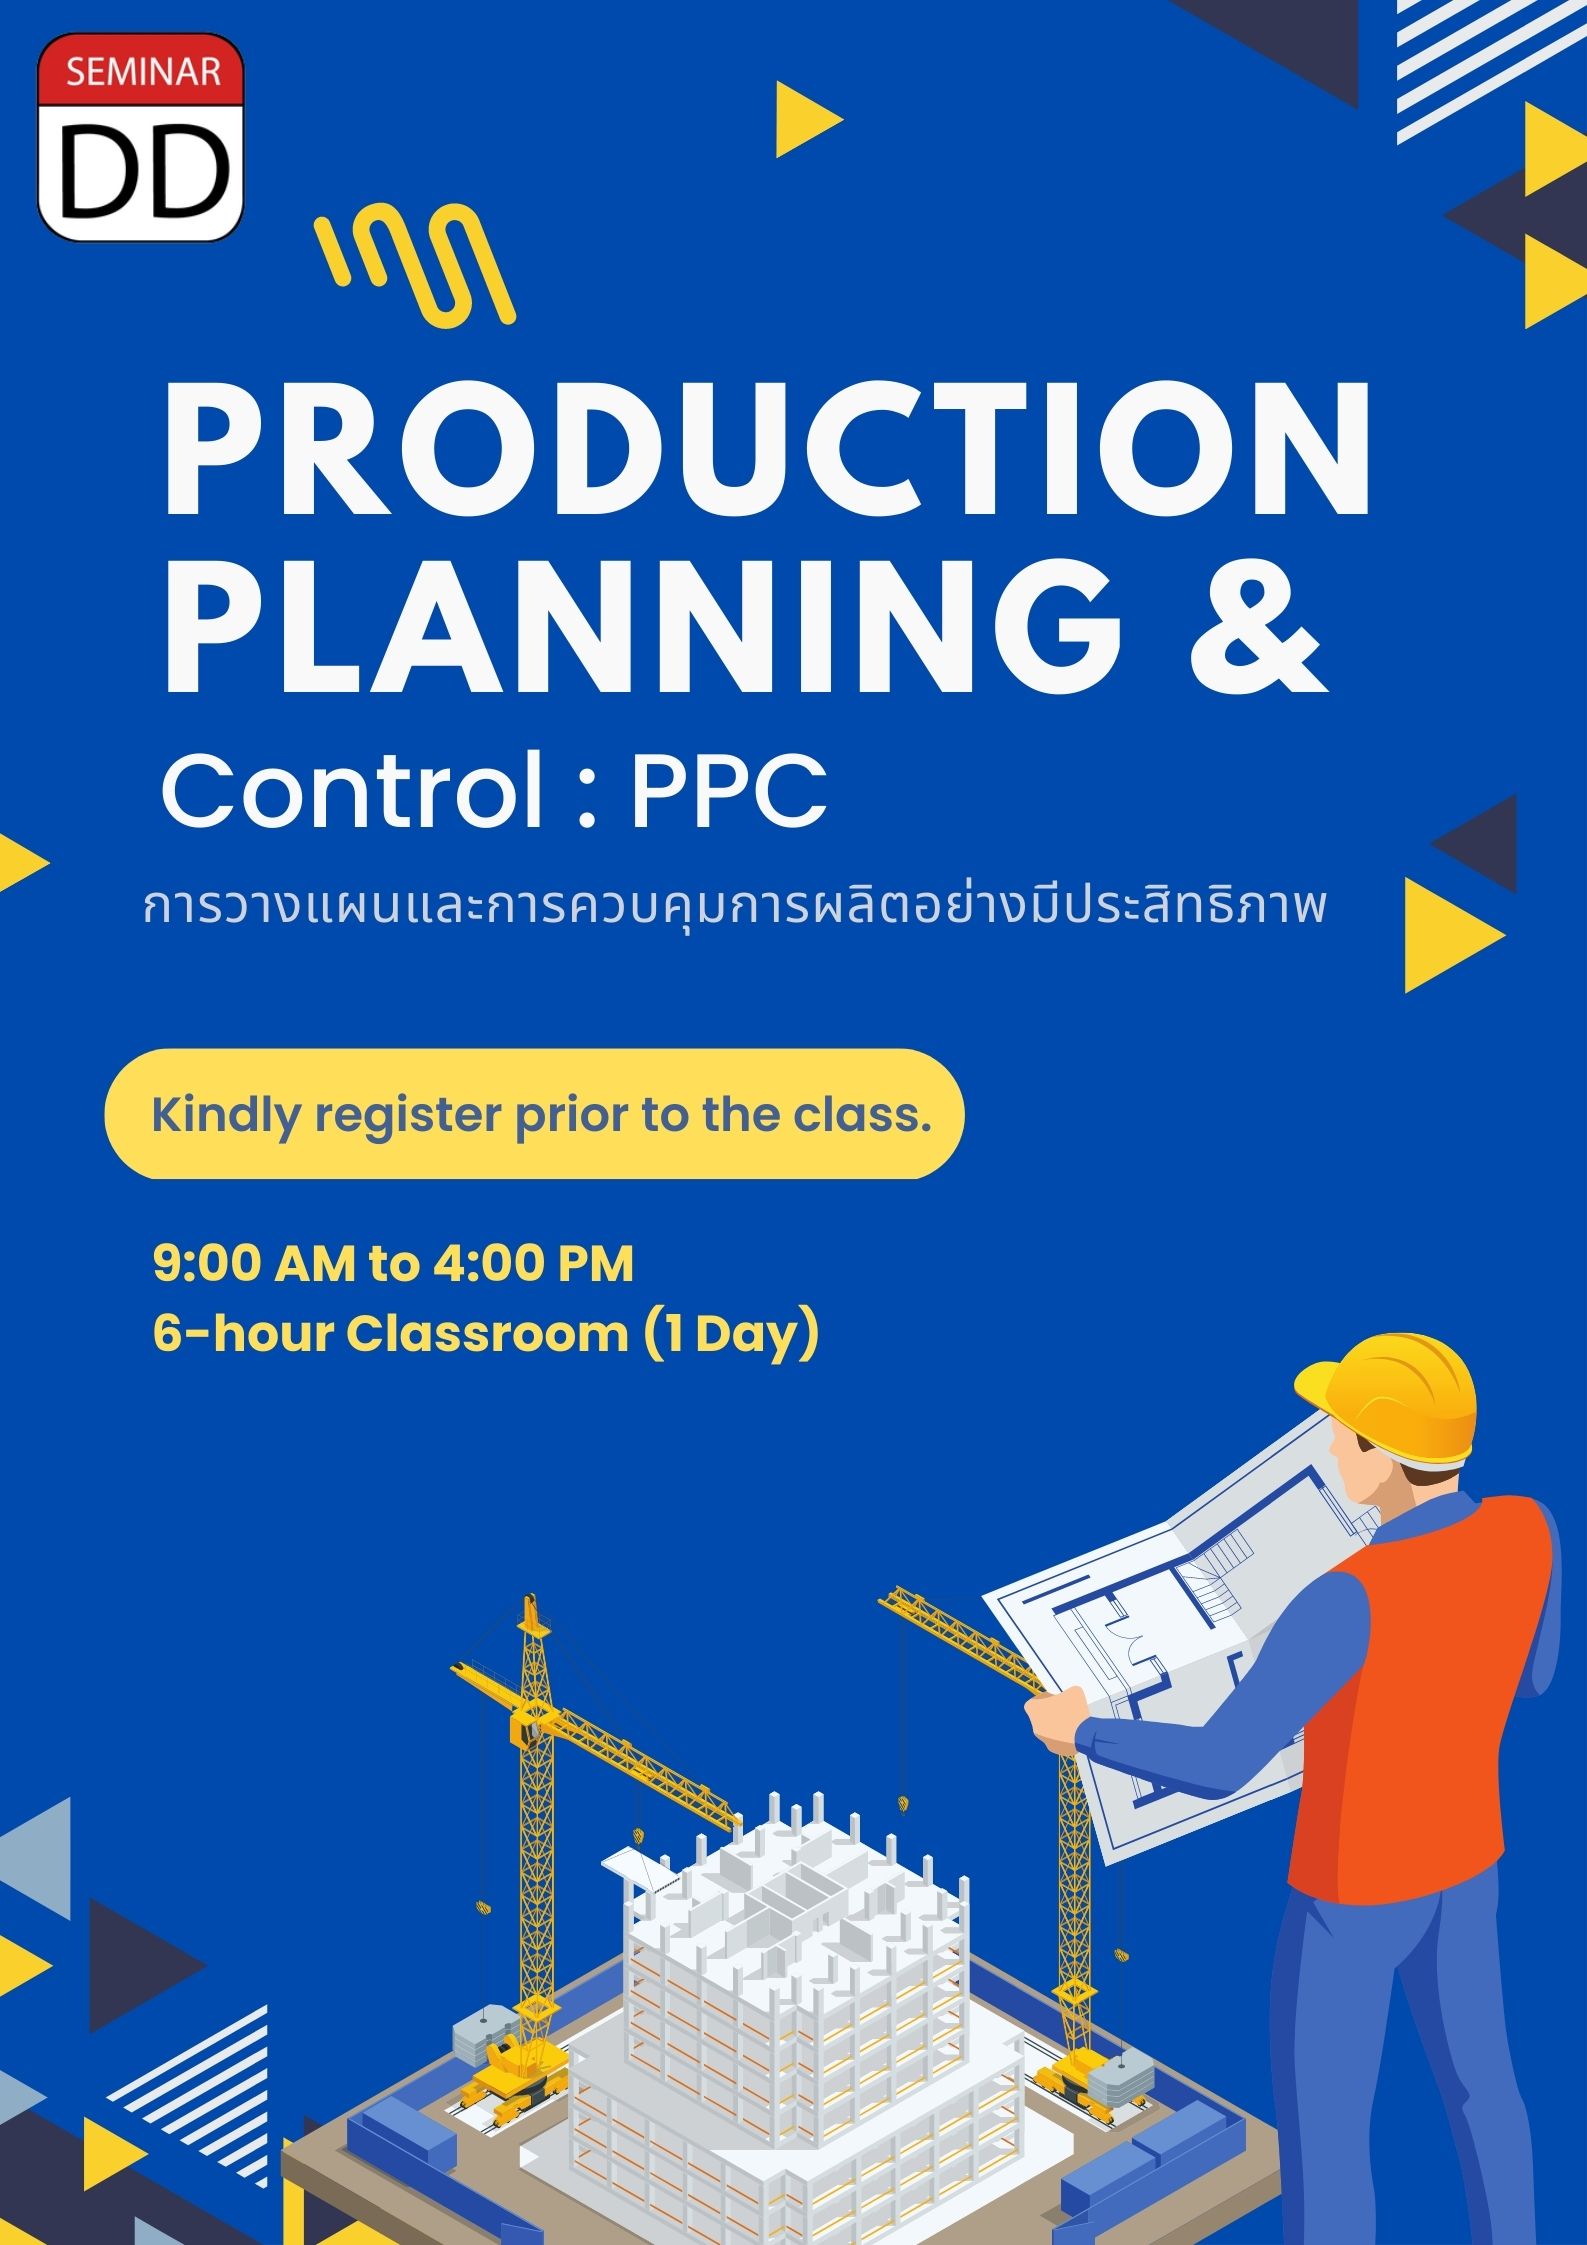 หลักสูตร การวางแผนและการควบคุมการผลิตอย่างมีประสิทธิภาพ (Production Planning & Control : PPC)